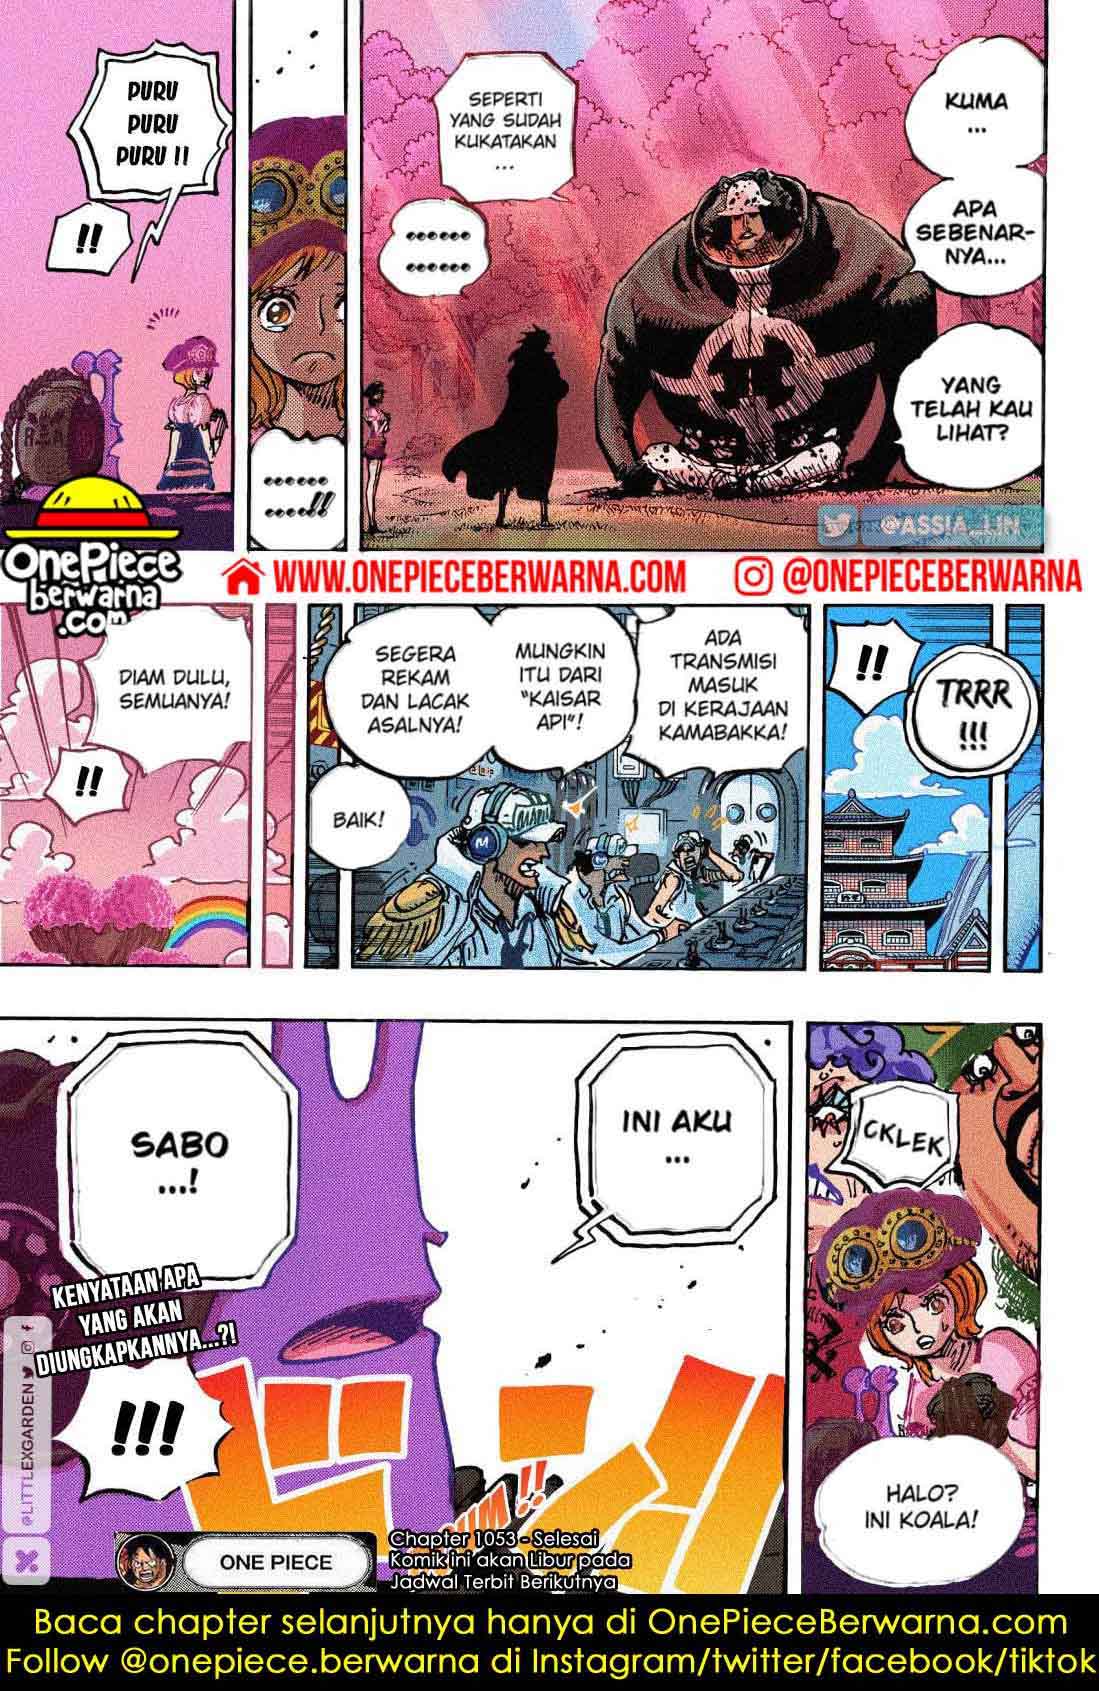 One Piece Berwarna Chapter 1058